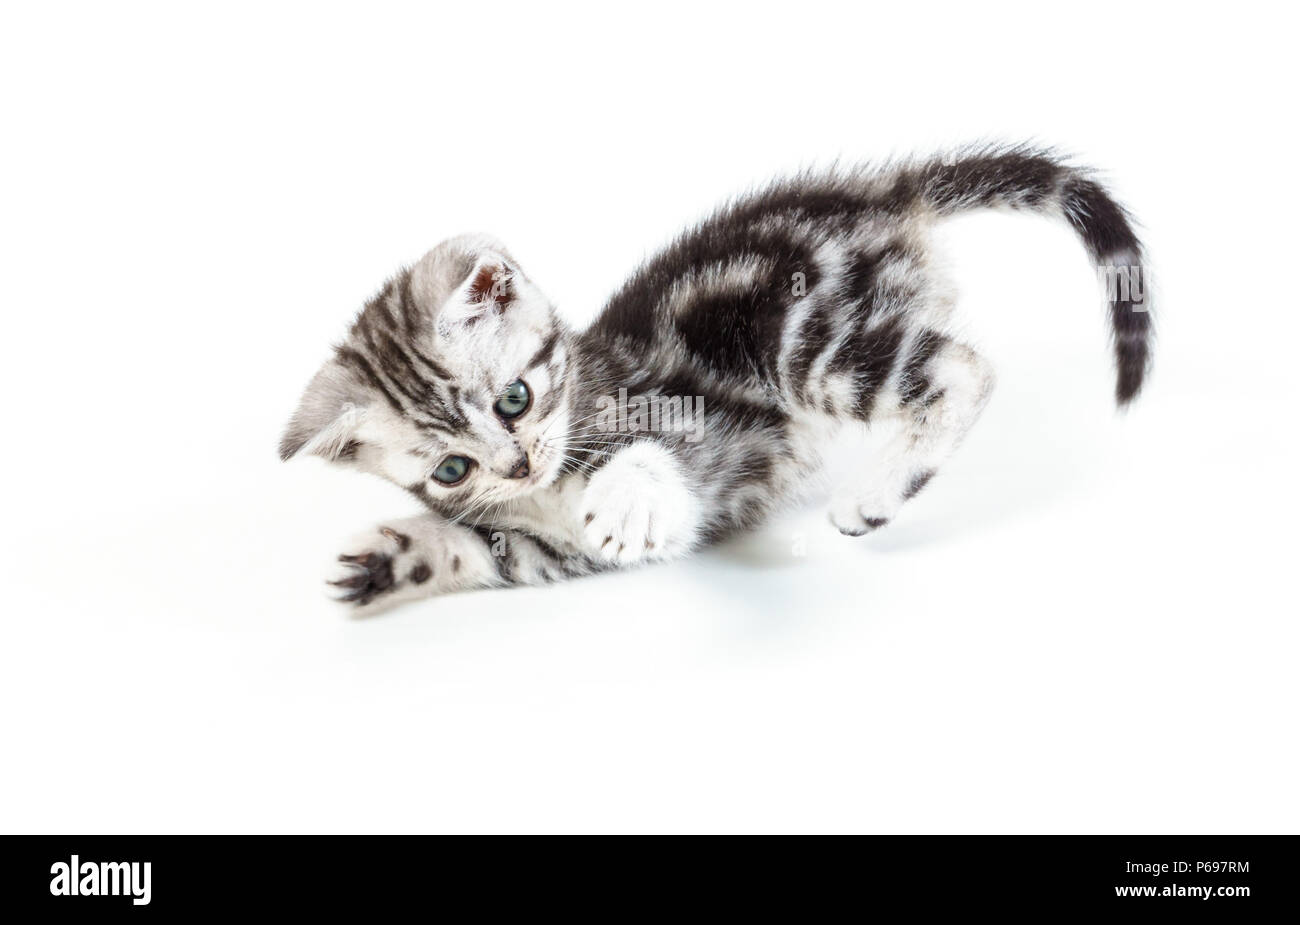 British capelli corti silver tabby kitten caccia isolati su sfondo bianco. Foto Stock